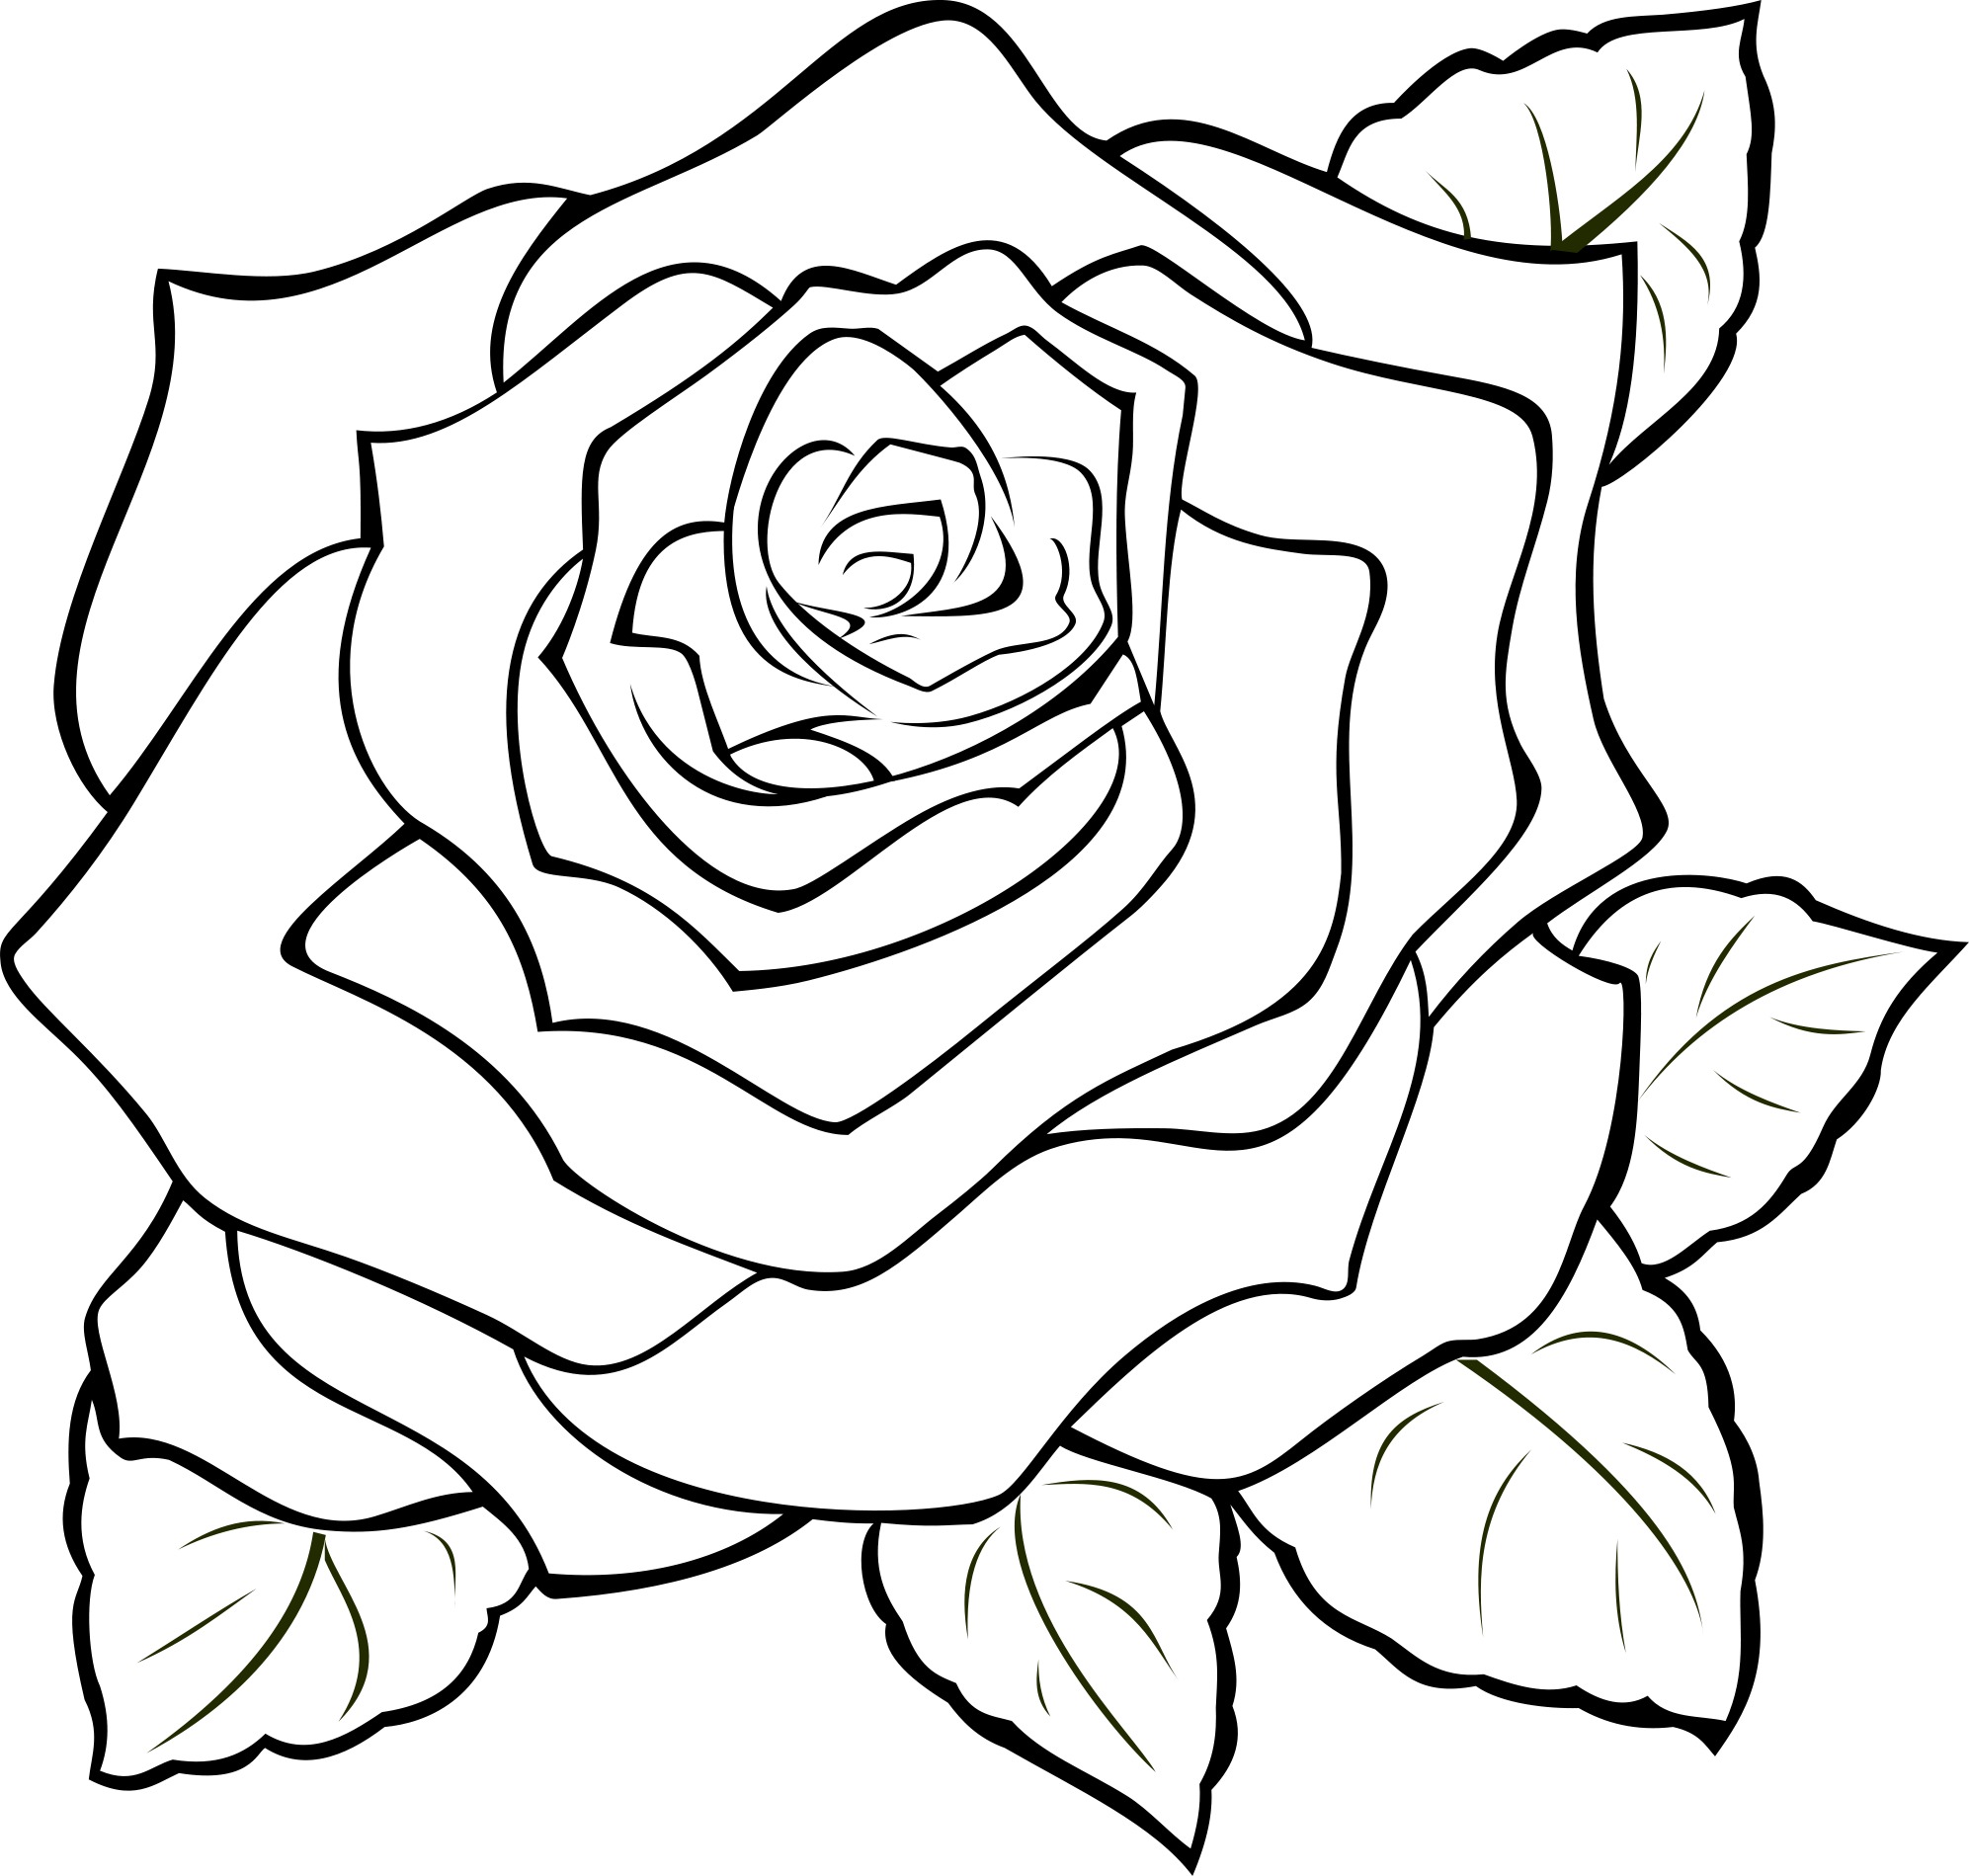 Контур скопировать. Цветы. Раскраска. Раскраски цветы красивые. Рисунок розы для срисовки.